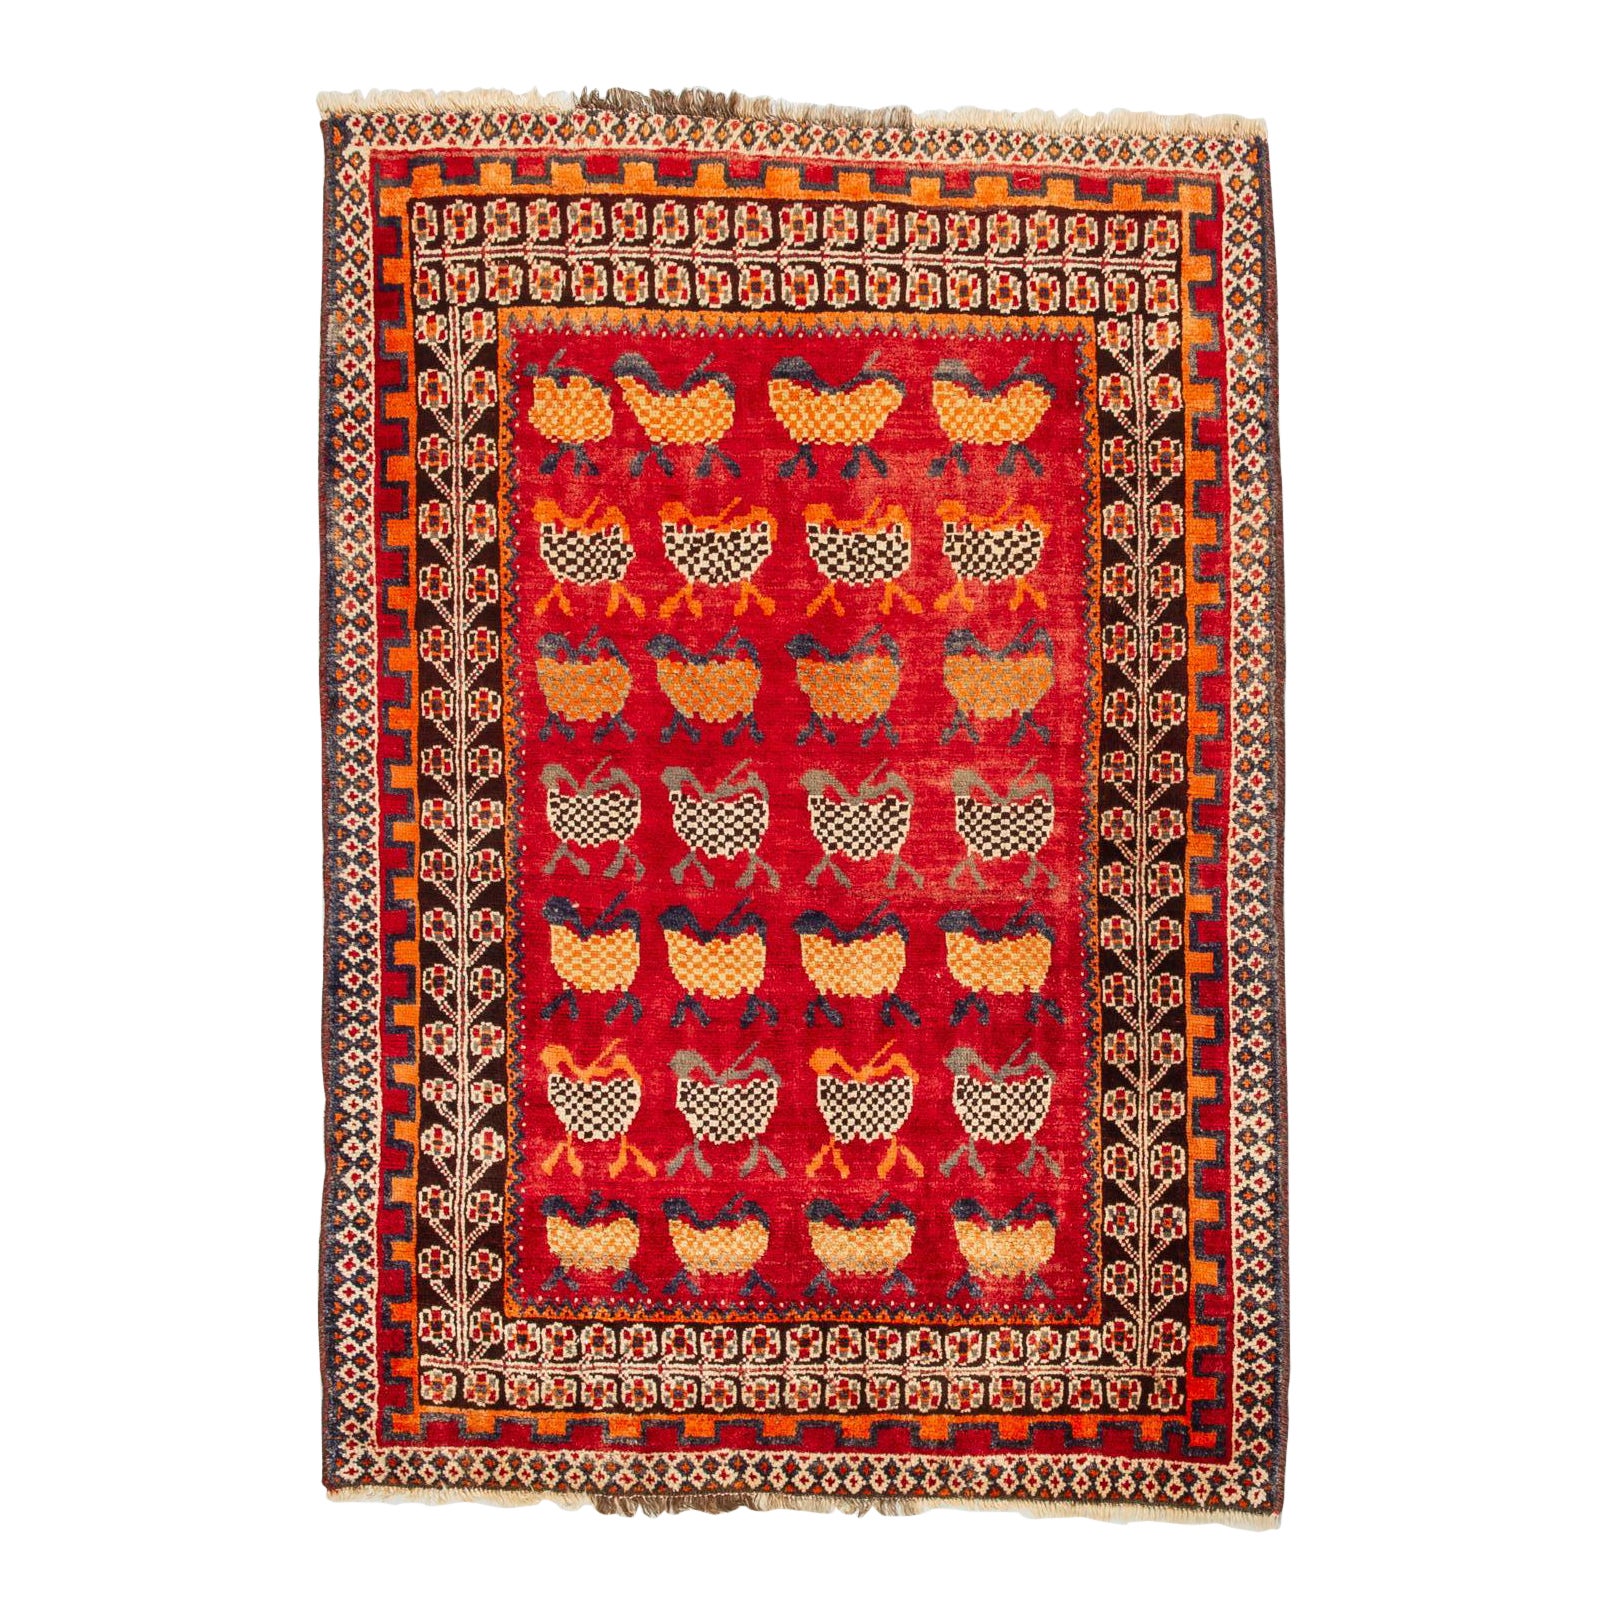 Nomadic Kurdestan Carpet or Rug